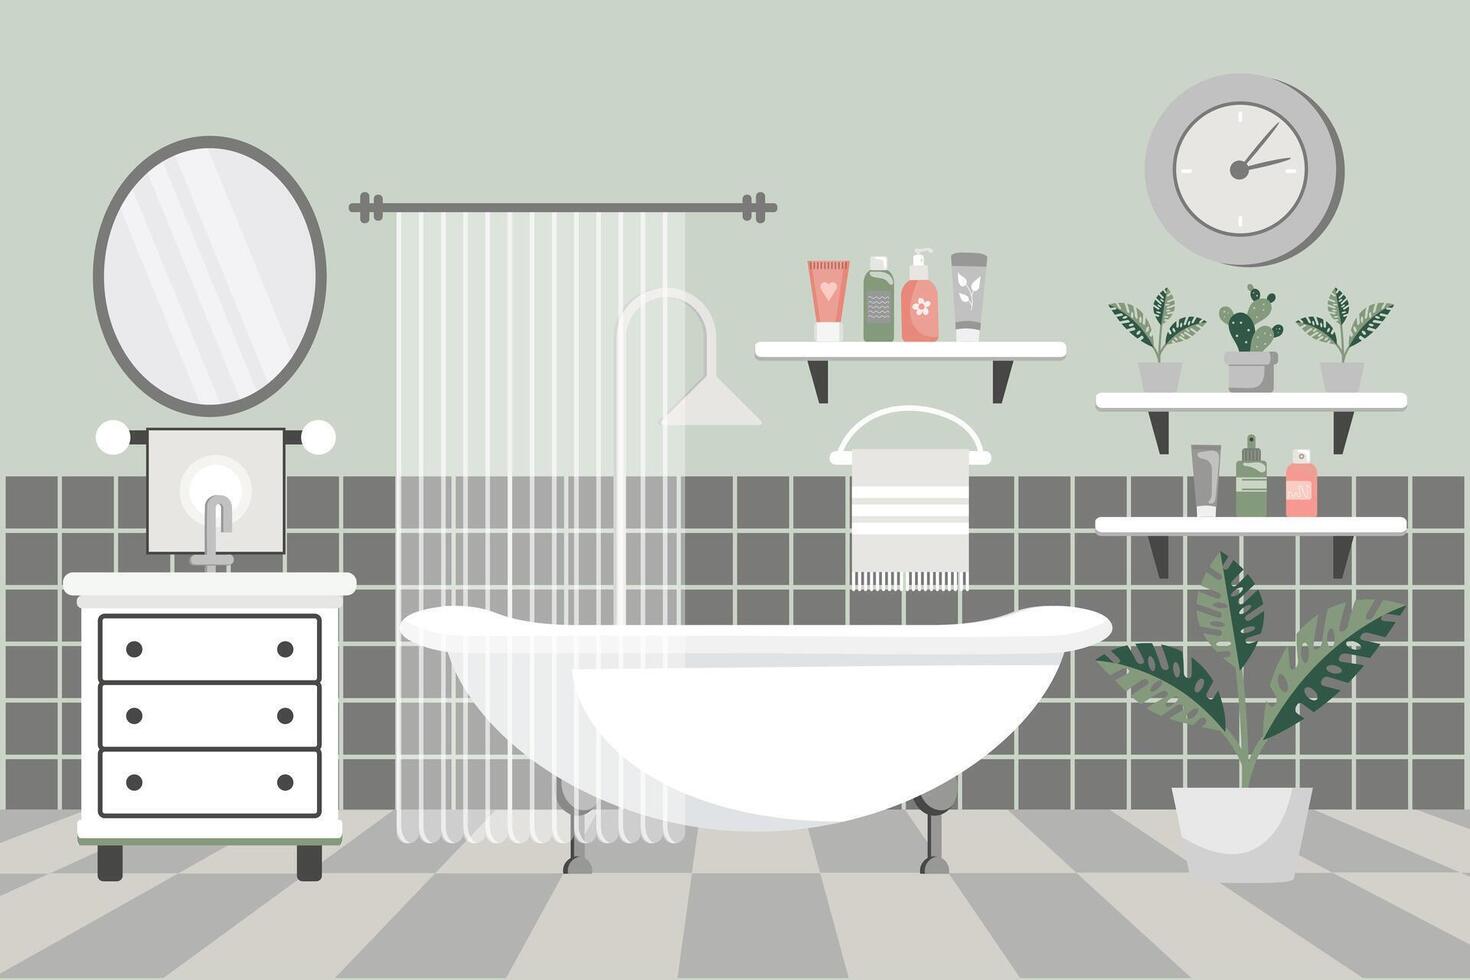 mysigt badrum. badrum interiör med badrum möbel, badkar, tvättställ, handdukar, spegel, fönster, hus växter. platt illustration. vektor